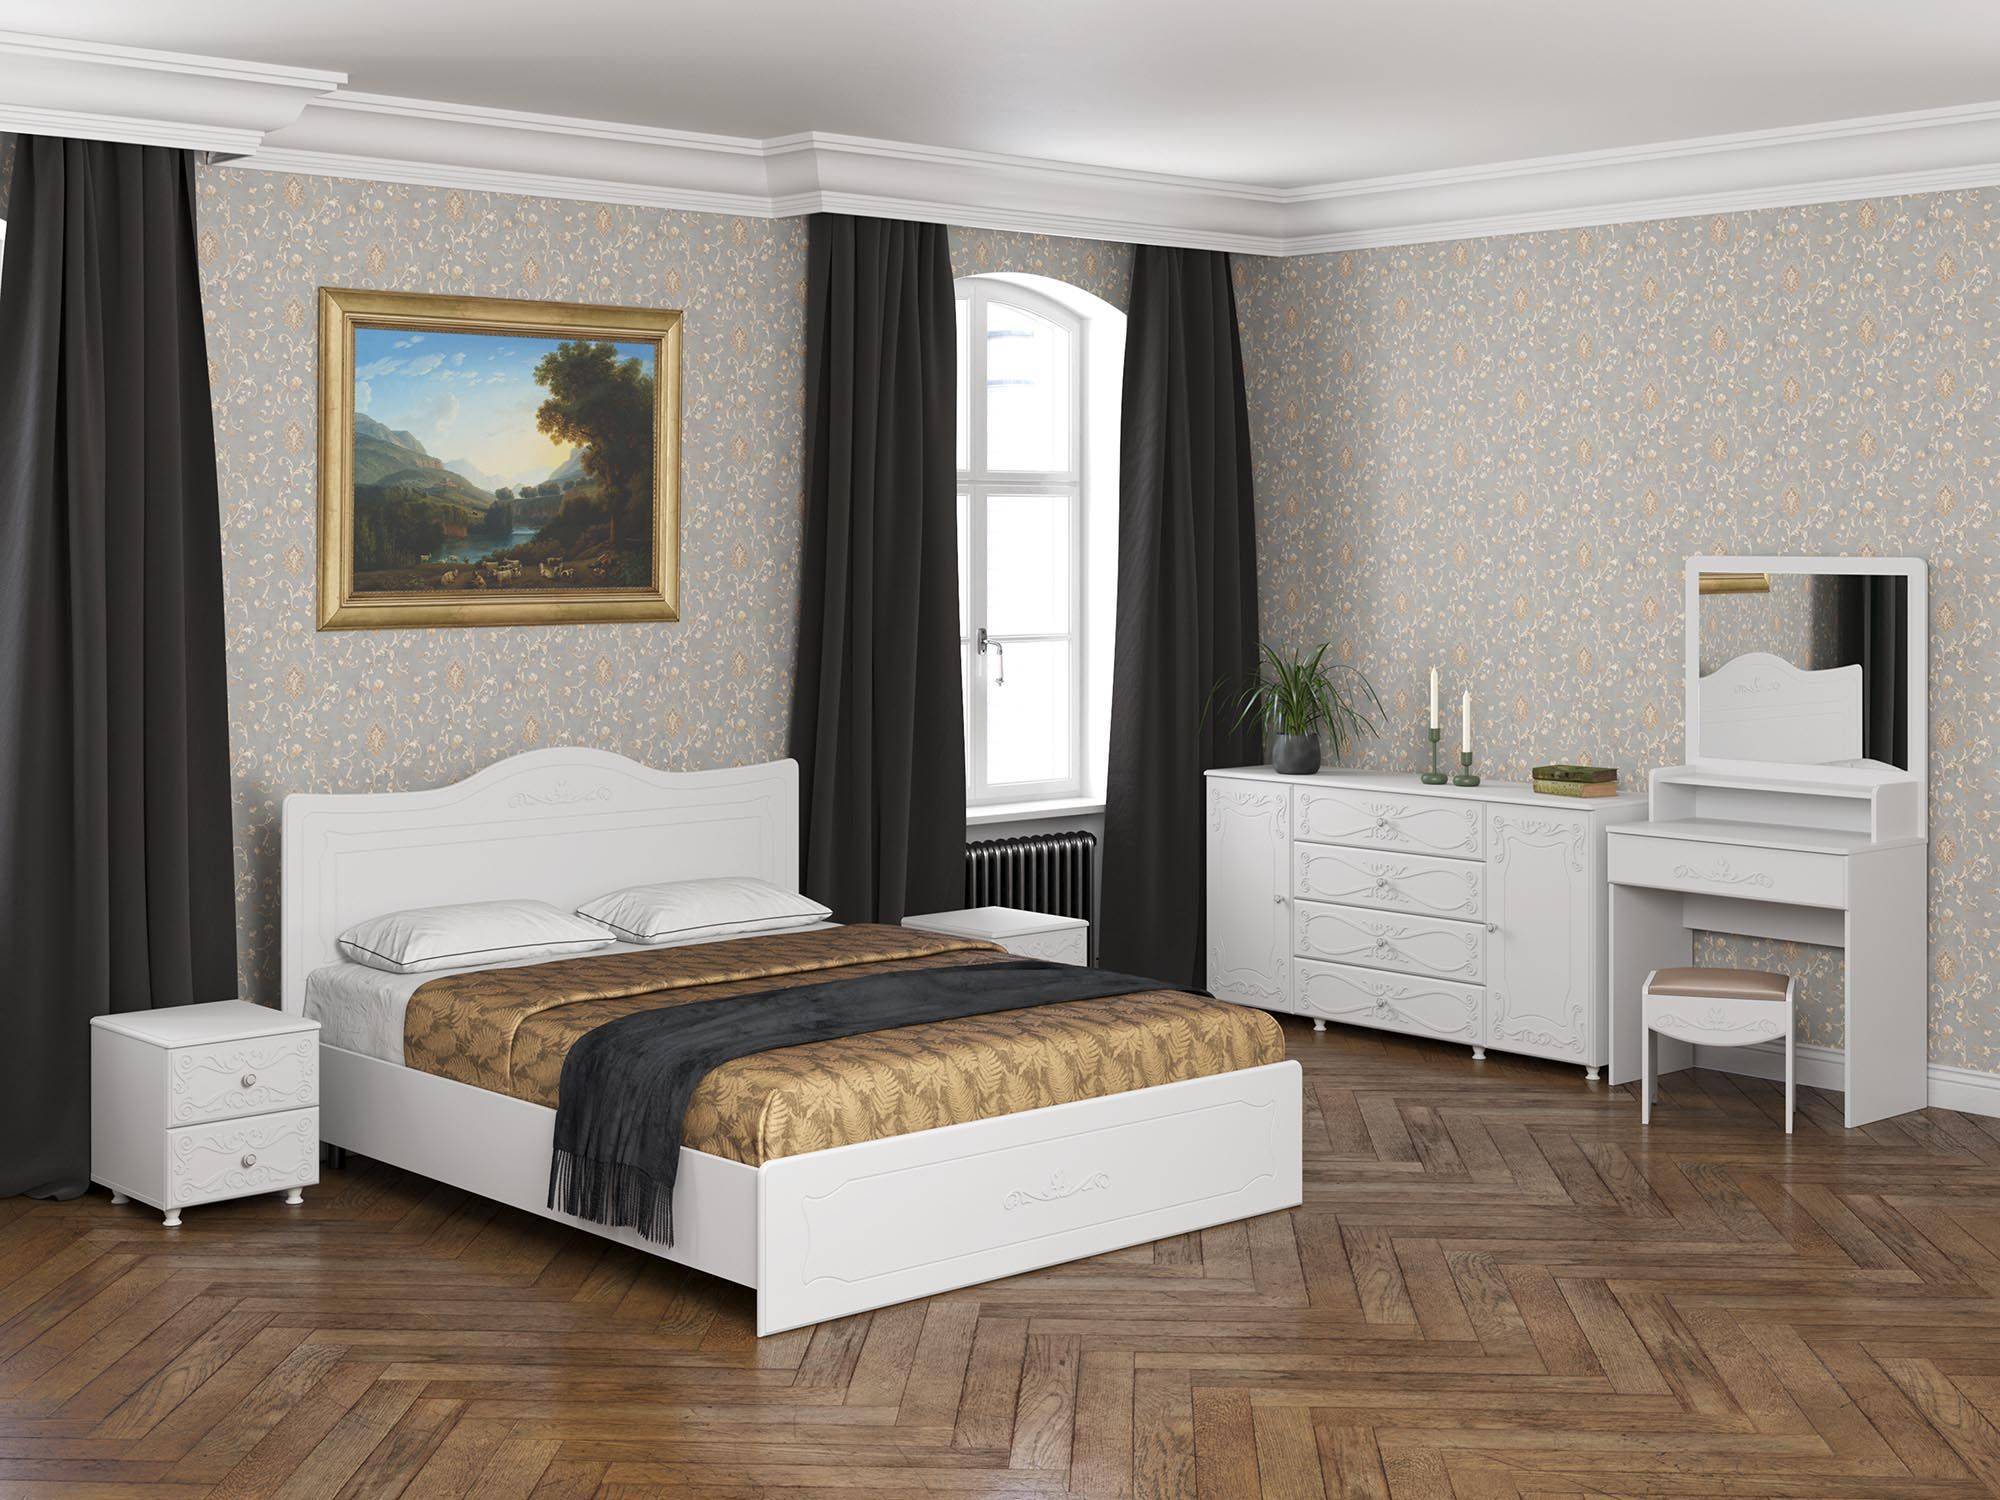 Спальня Италия-5 белое дерево Белое дерево, Белый, МДФ, ЛДСП италия спальня 1